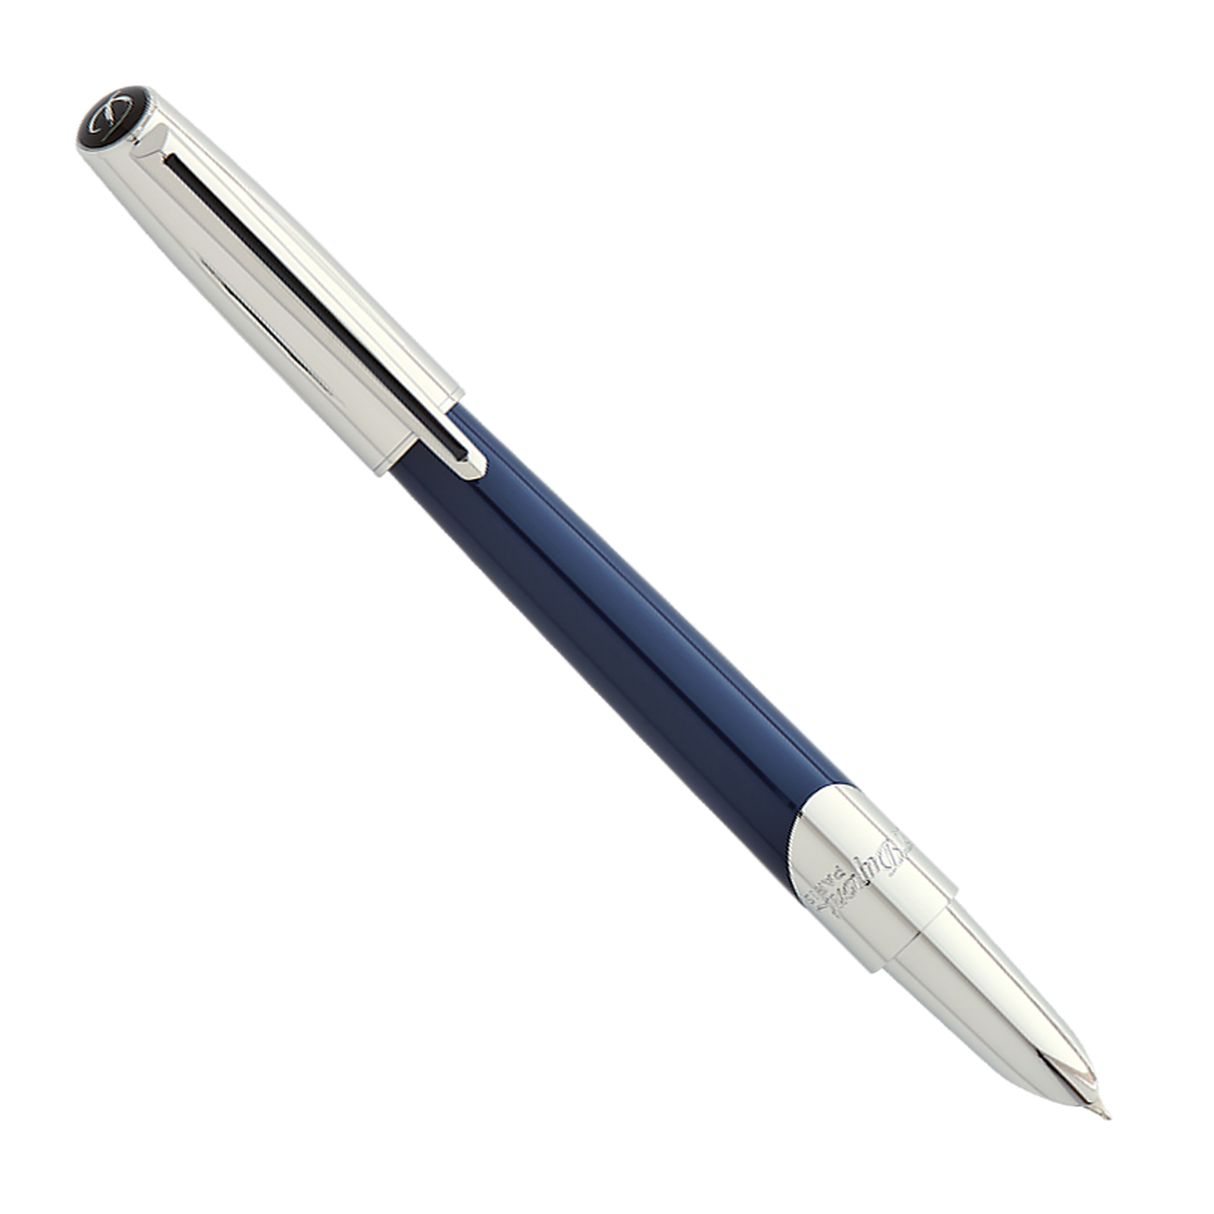 S.T. Dupont Defi Millennium Navy Blue/Chrome - Fountain Pen